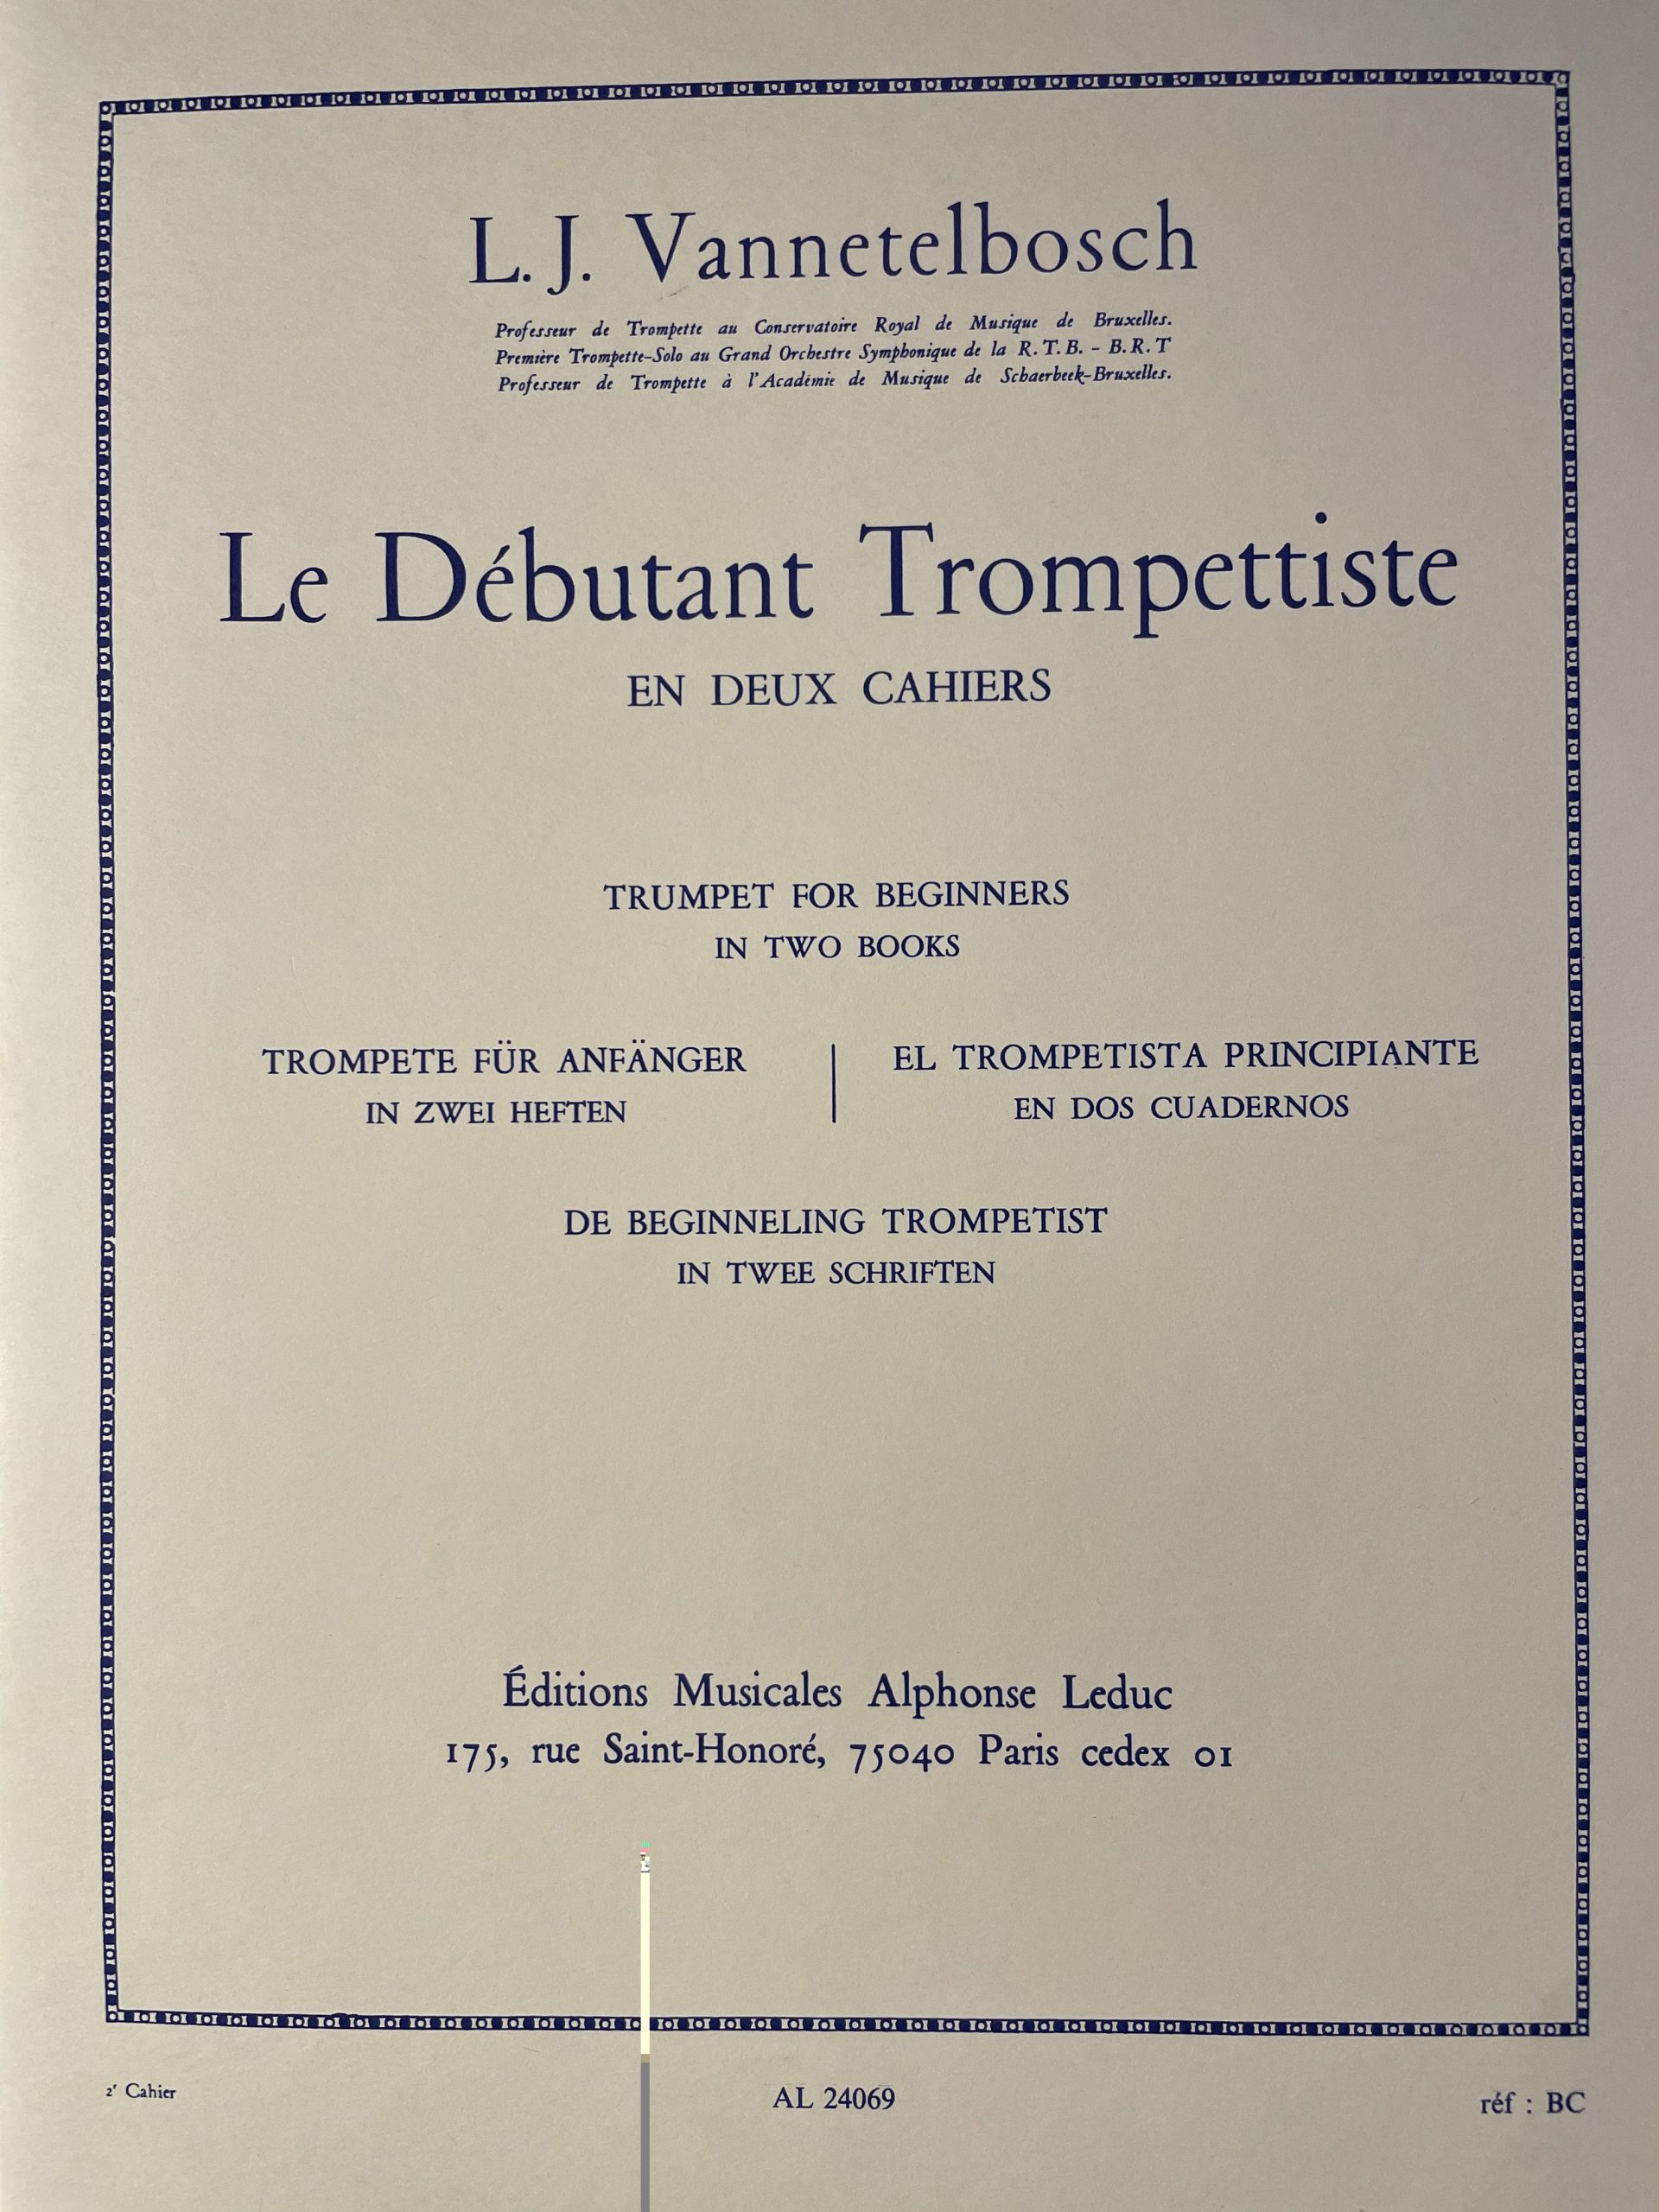 Le dèbutant trompettiste - L. J. Vannetelbosch - Deel 2